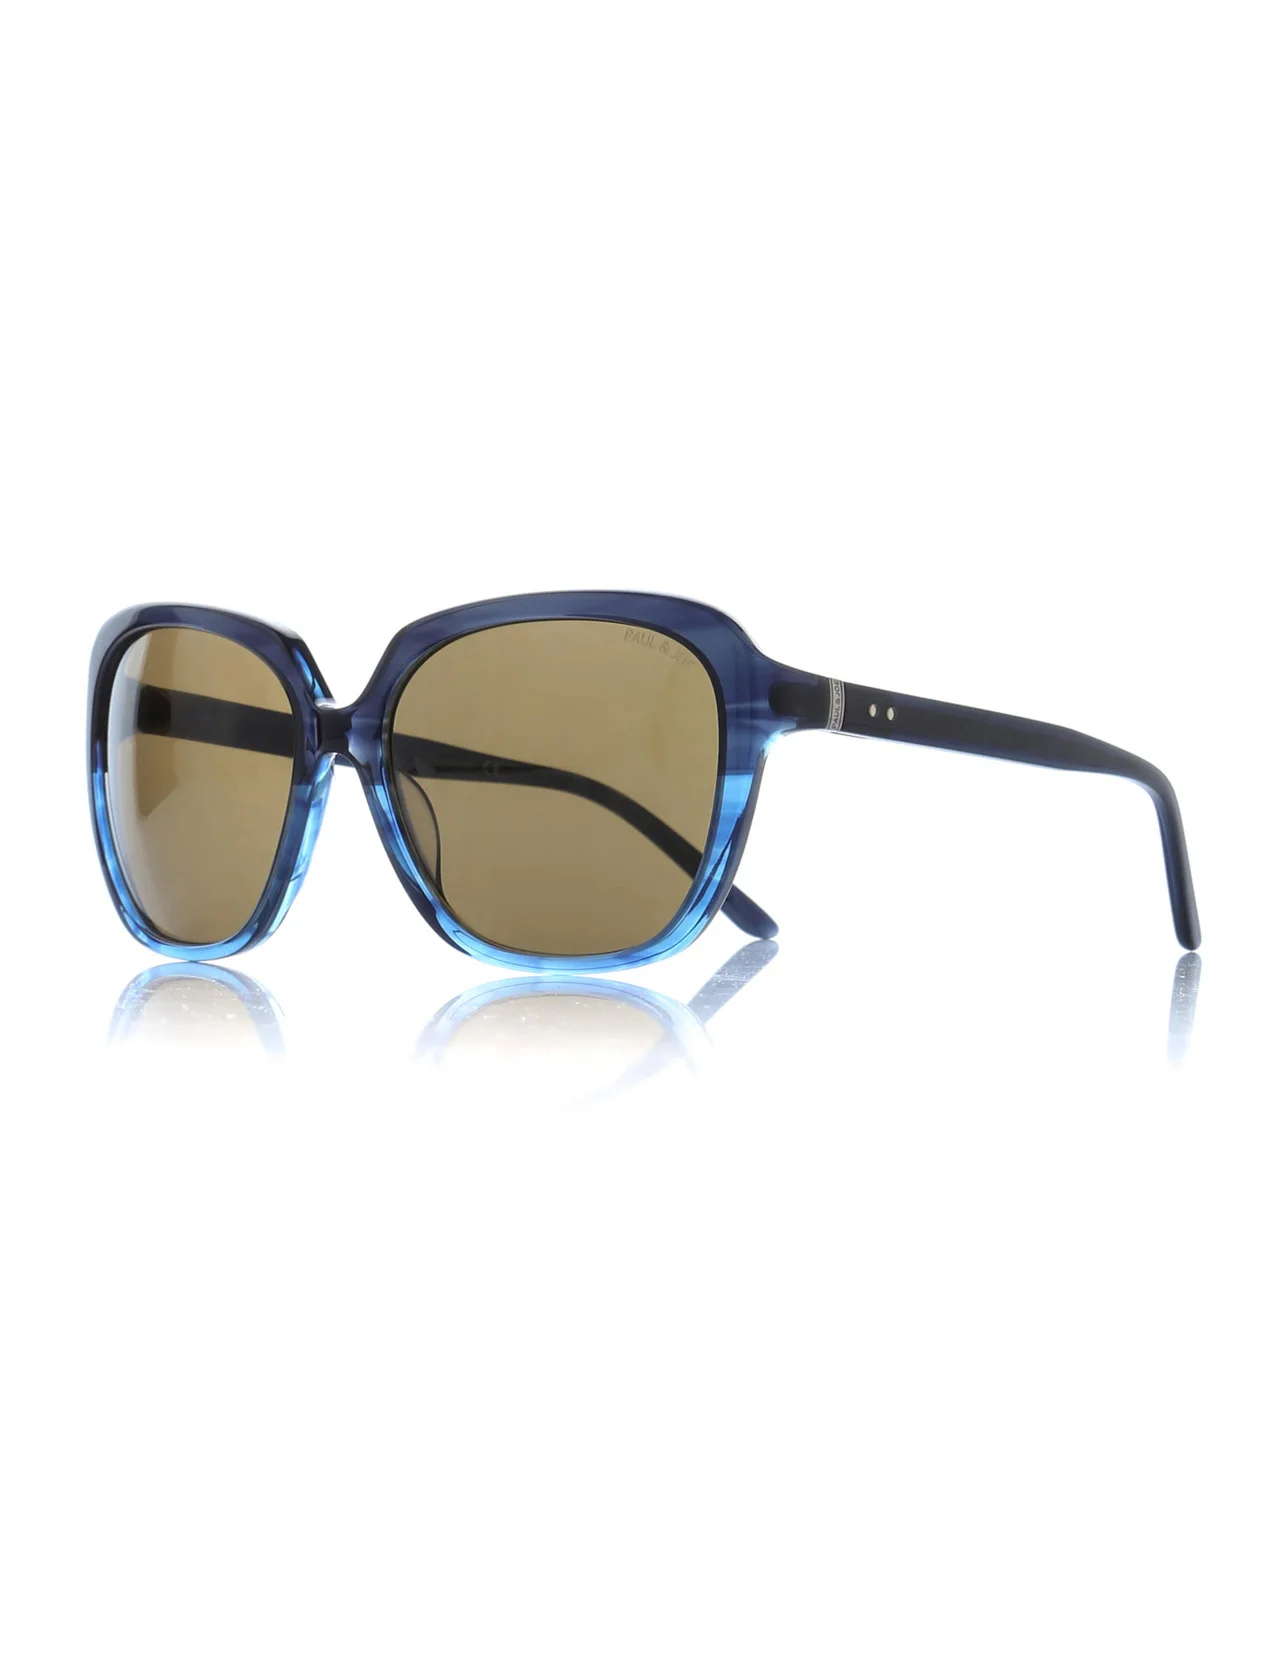 

Women's sunglasses pj oceane 01 bl68 bone navy blue organic square square 58-17-135 paul / joe